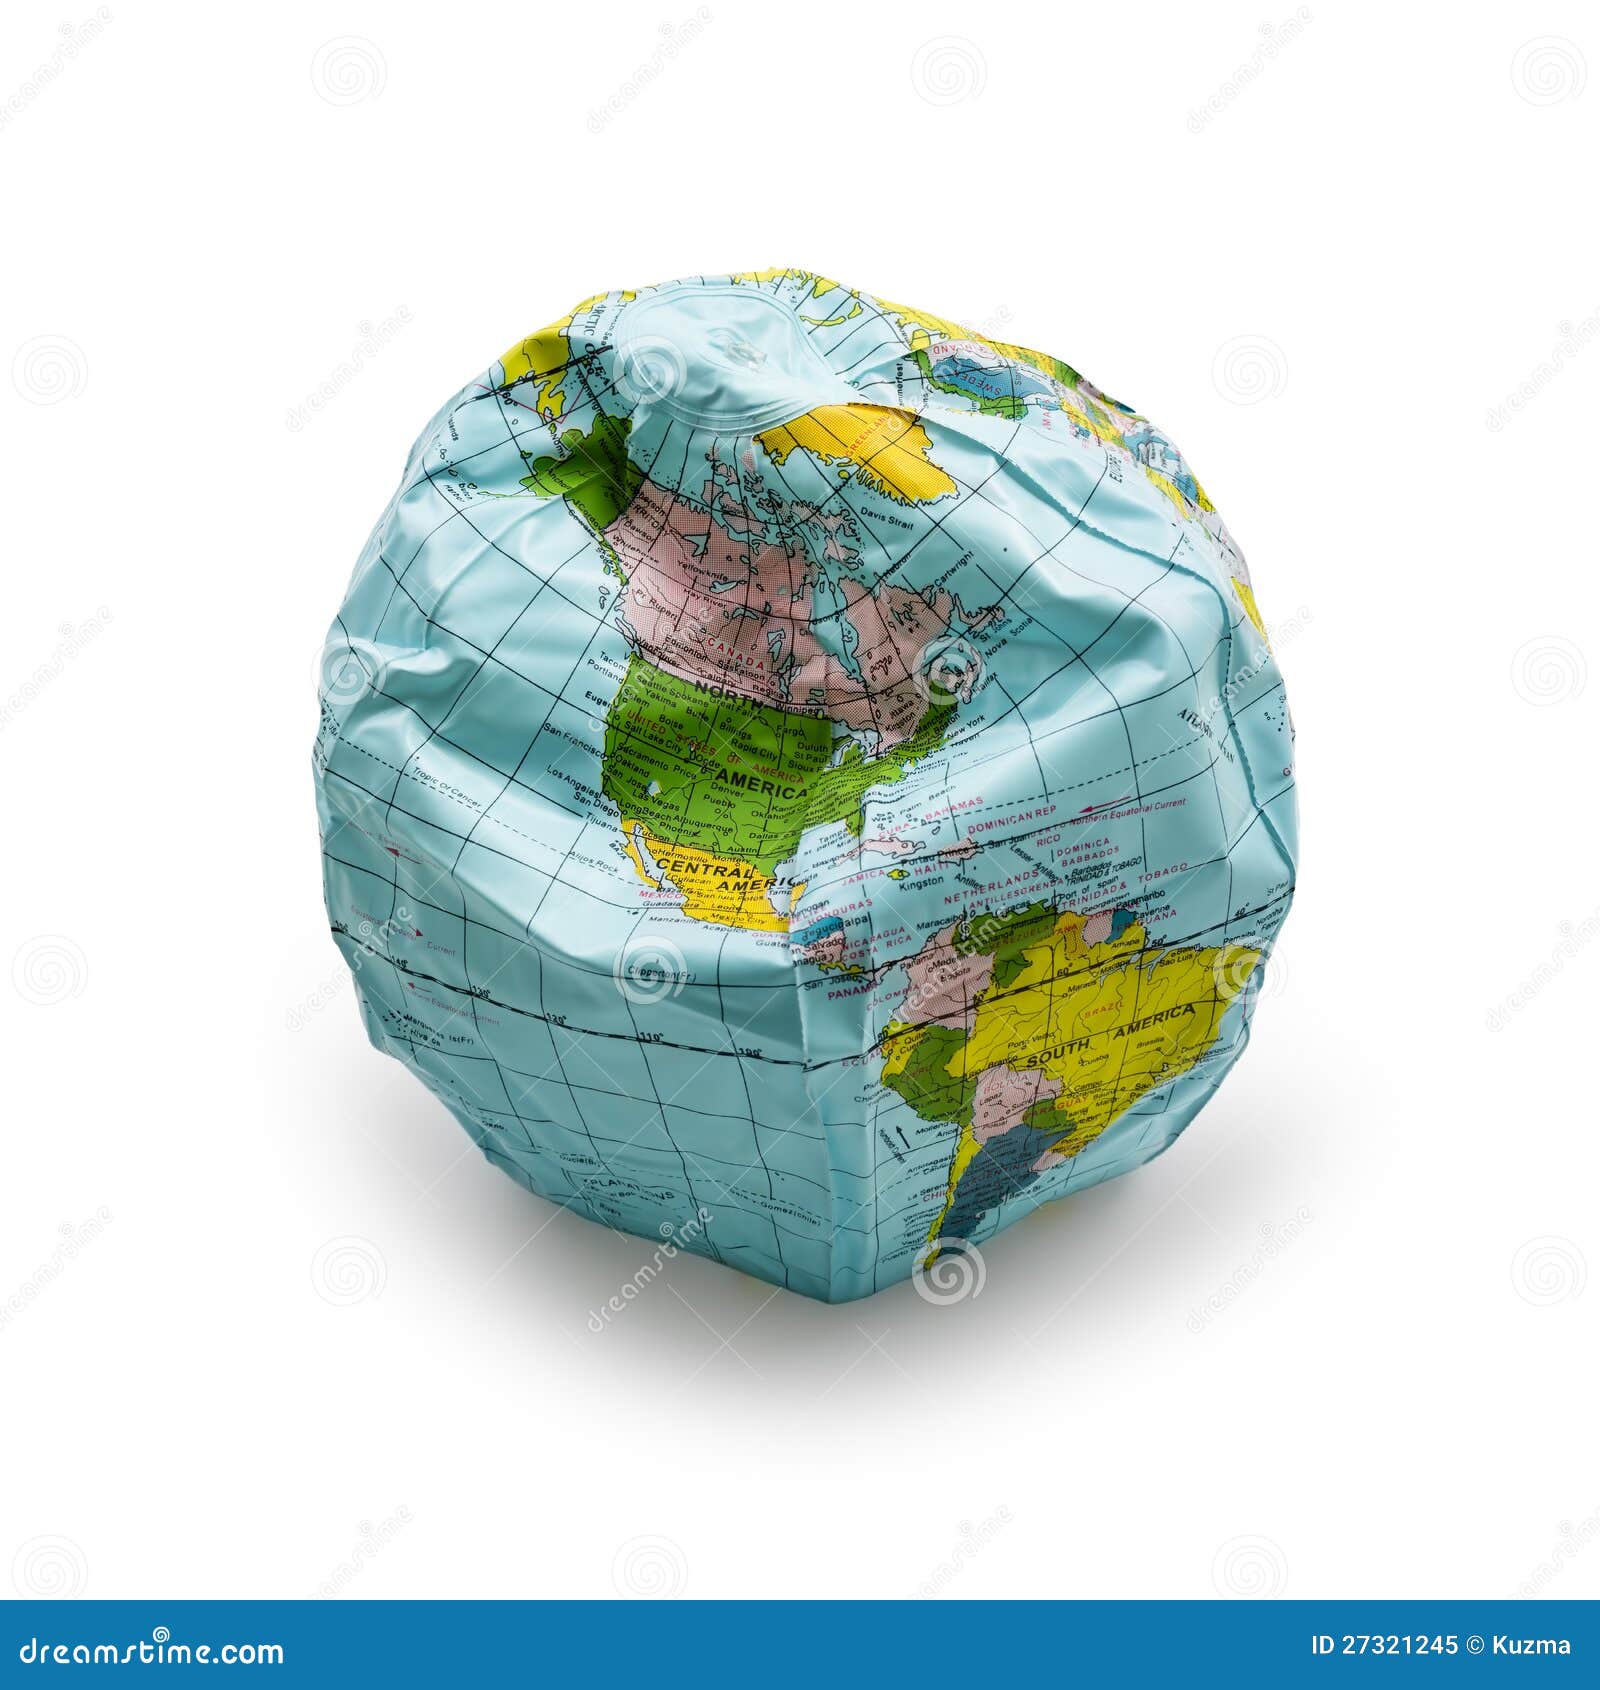 deflated globe